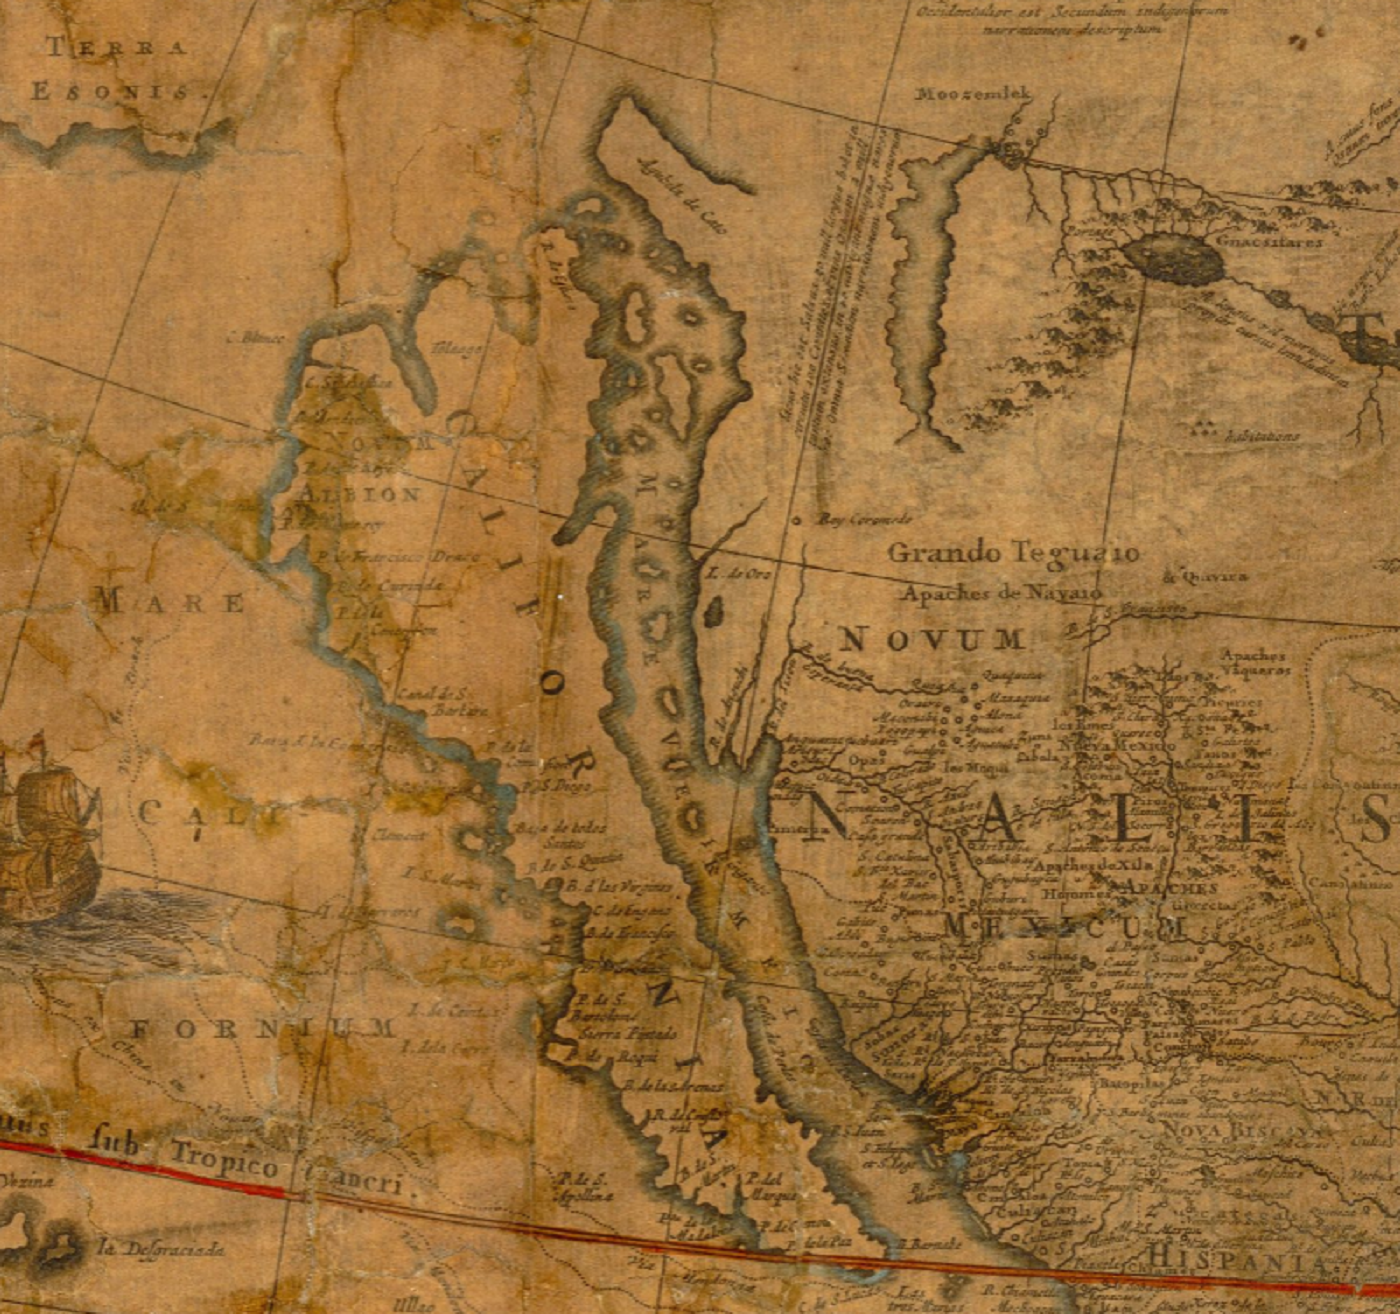 Serra funda San Diego, punt de partida de la colonització de Califòrnia